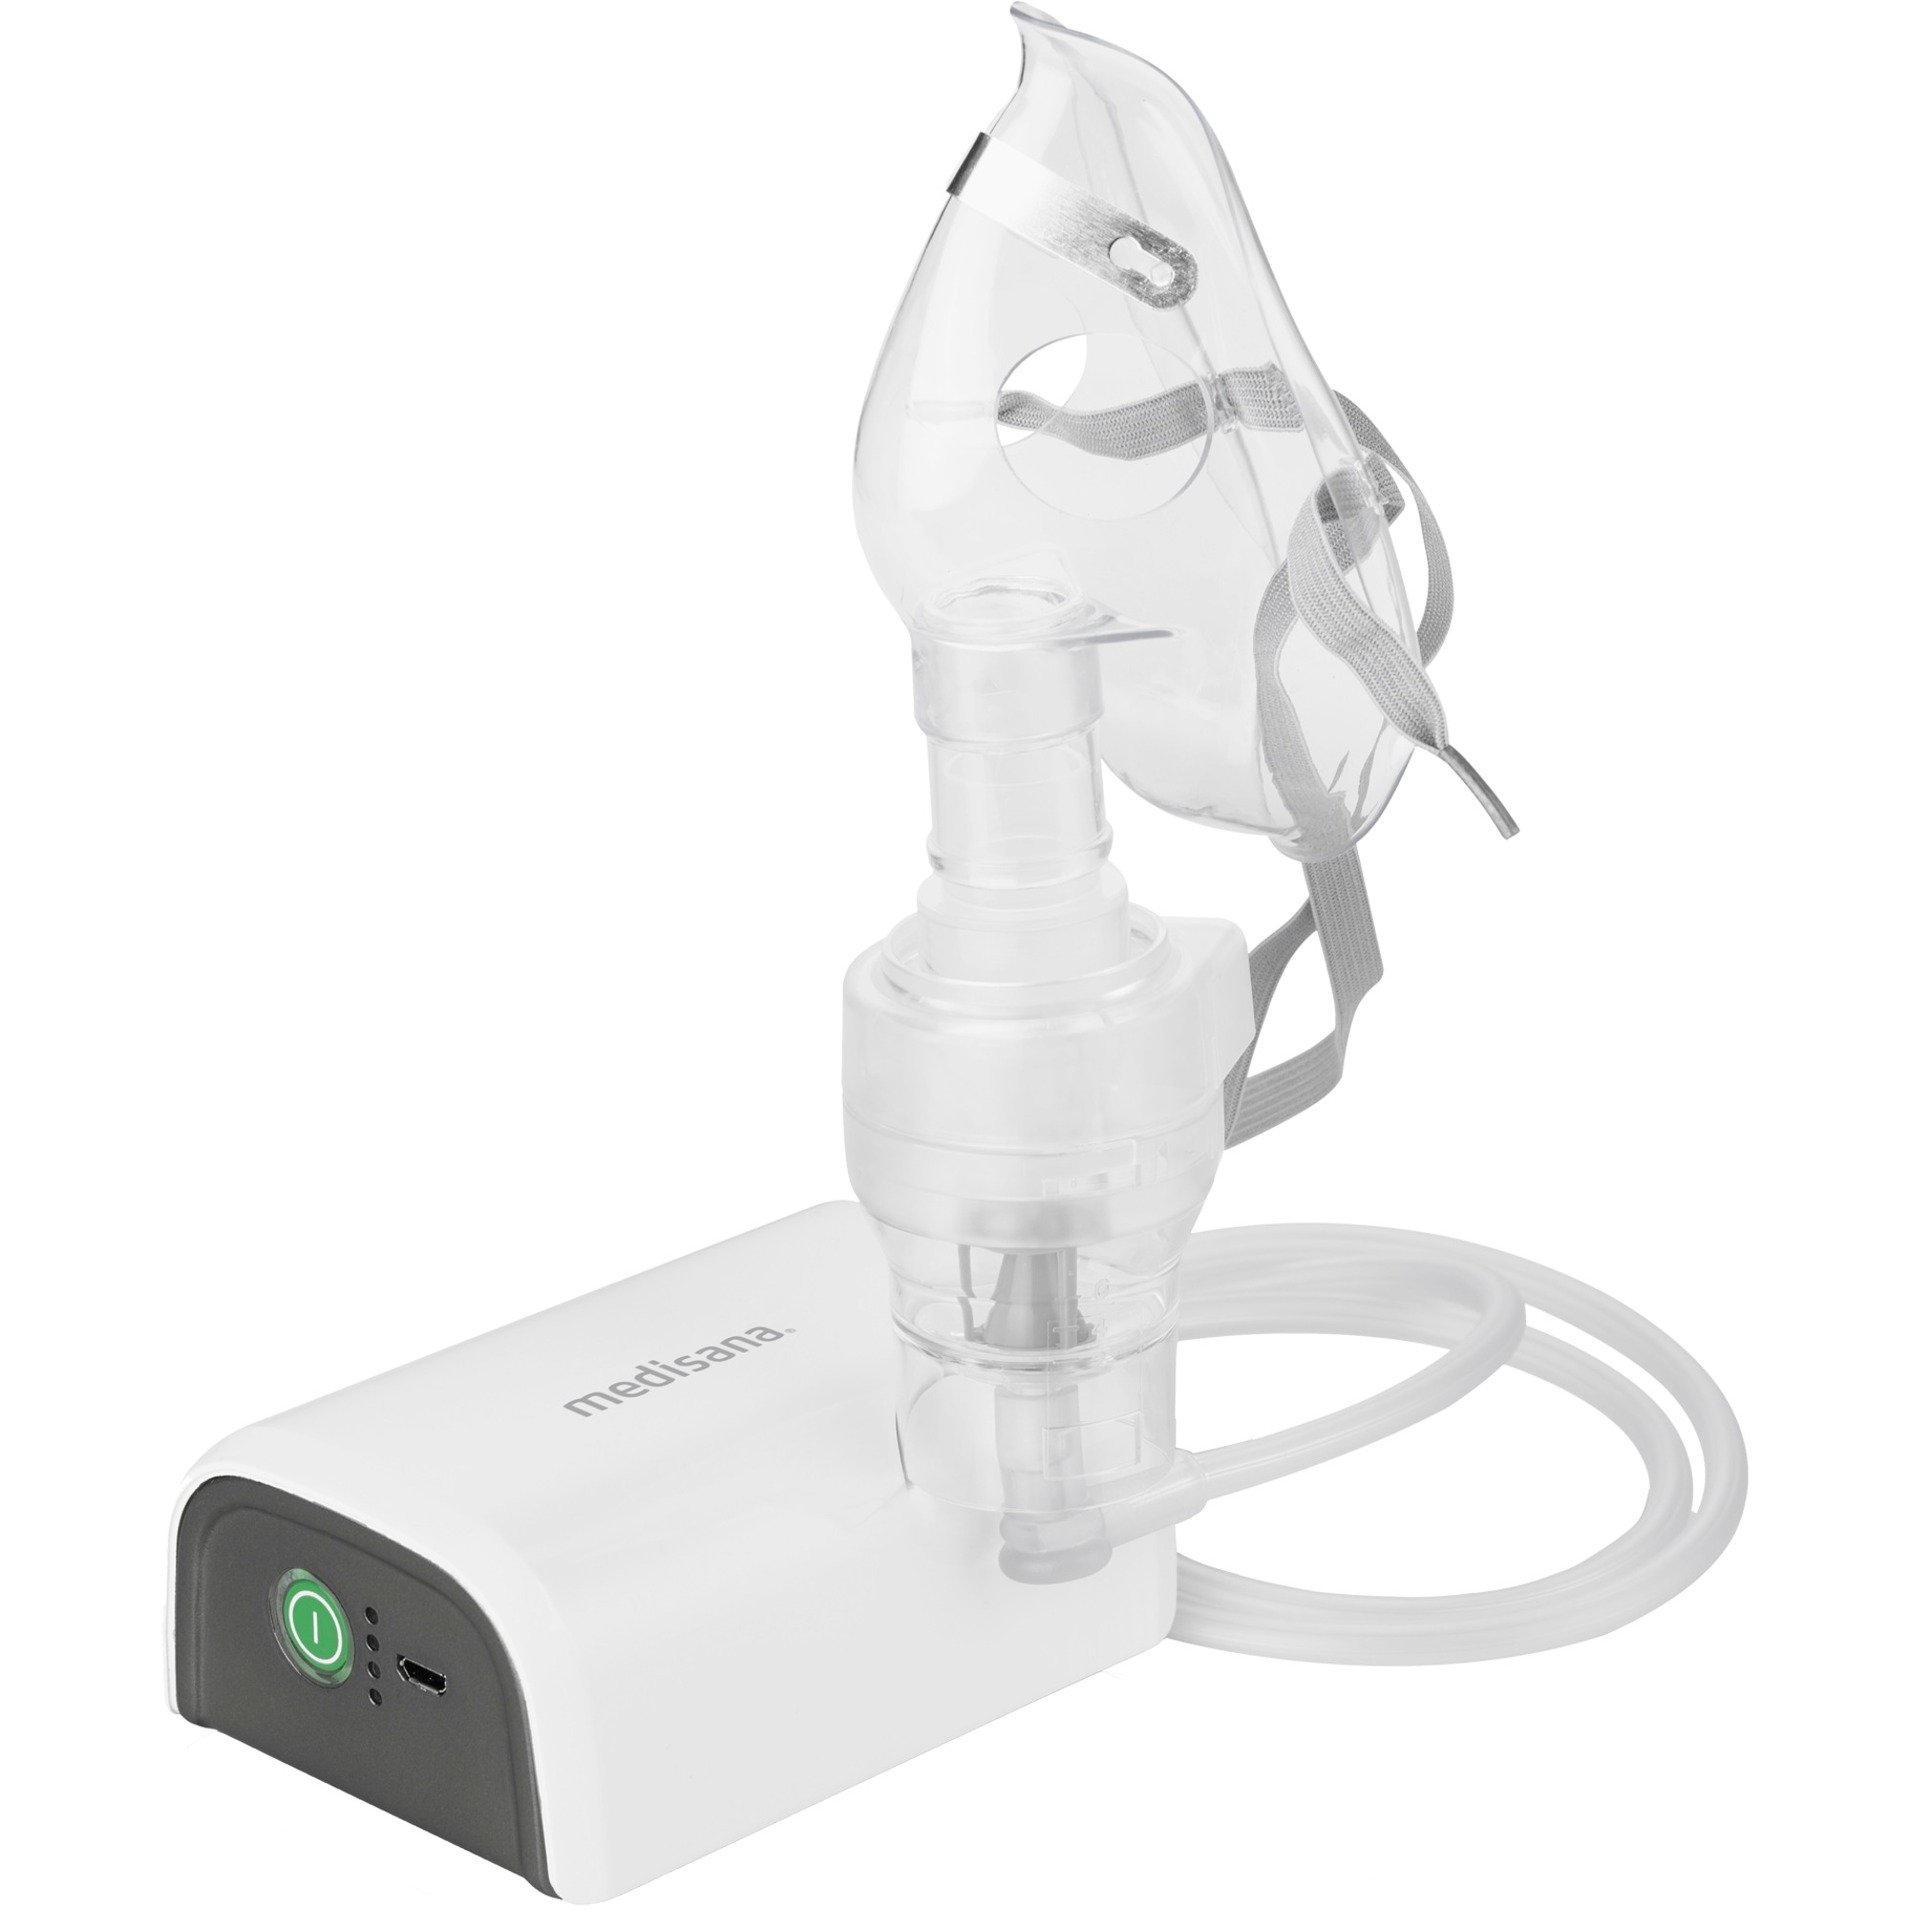 Image of Alternate - IN 600, Inhalator online einkaufen bei Alternate